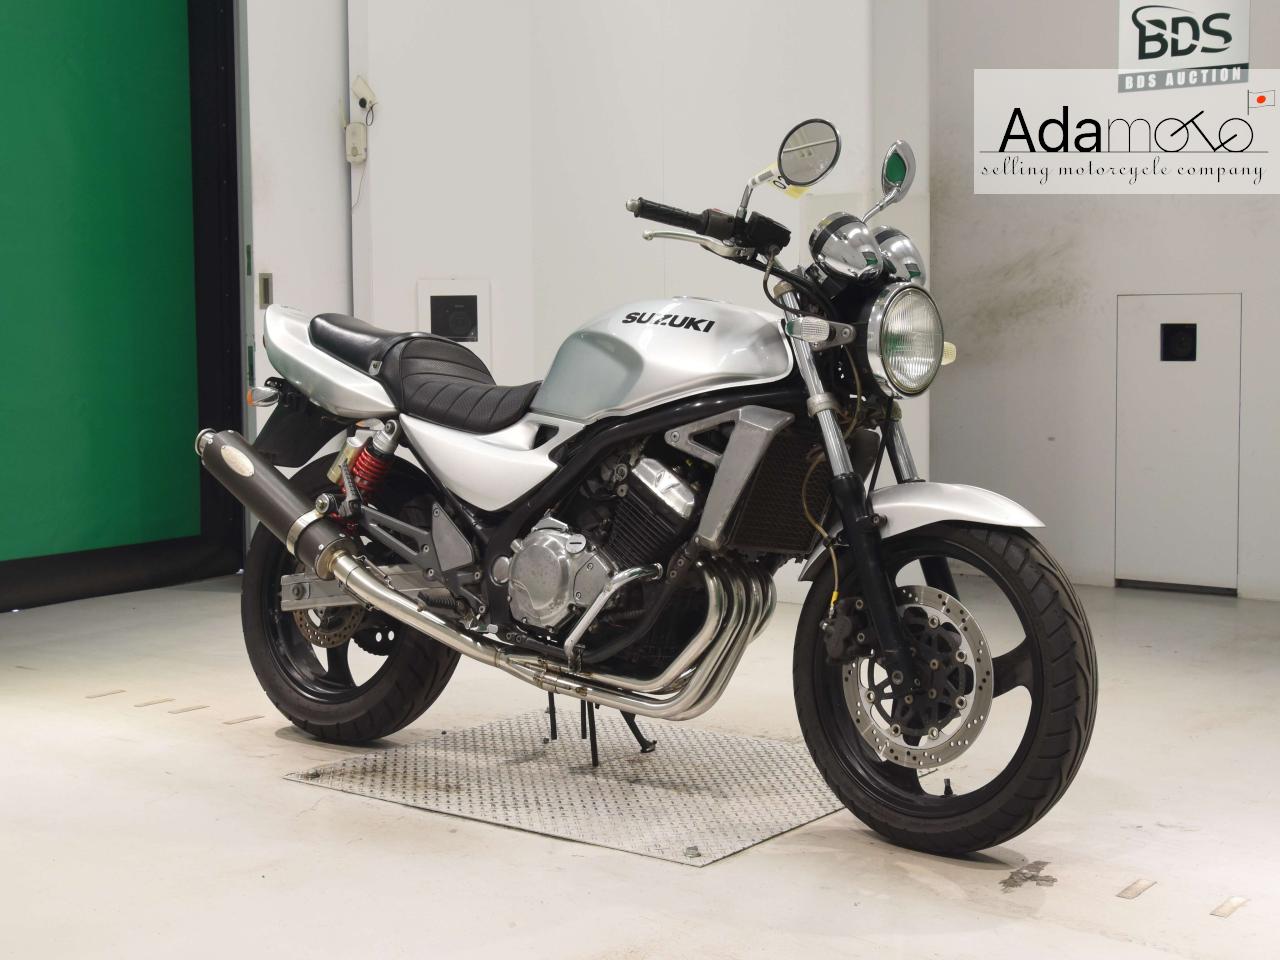 Suzuki GSX250FX - Adamoto - Motorcycles from Japan